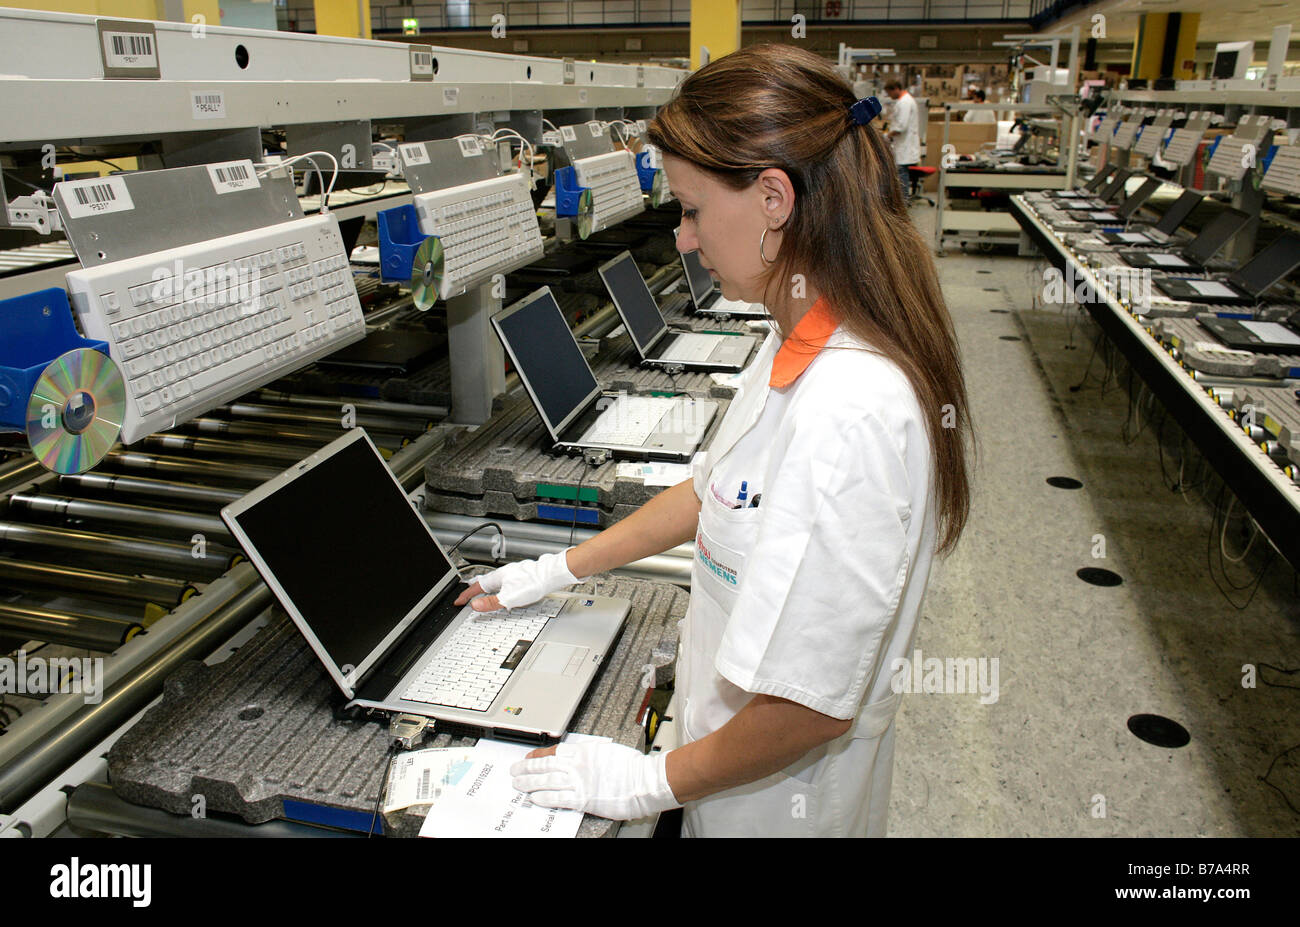 Mitarbeiter der Computer-Produktion in den Funktionstest, Endkontrolle eines Notebooks bei der Fujitsu Siemens GmbH in Augsbur Stockfoto